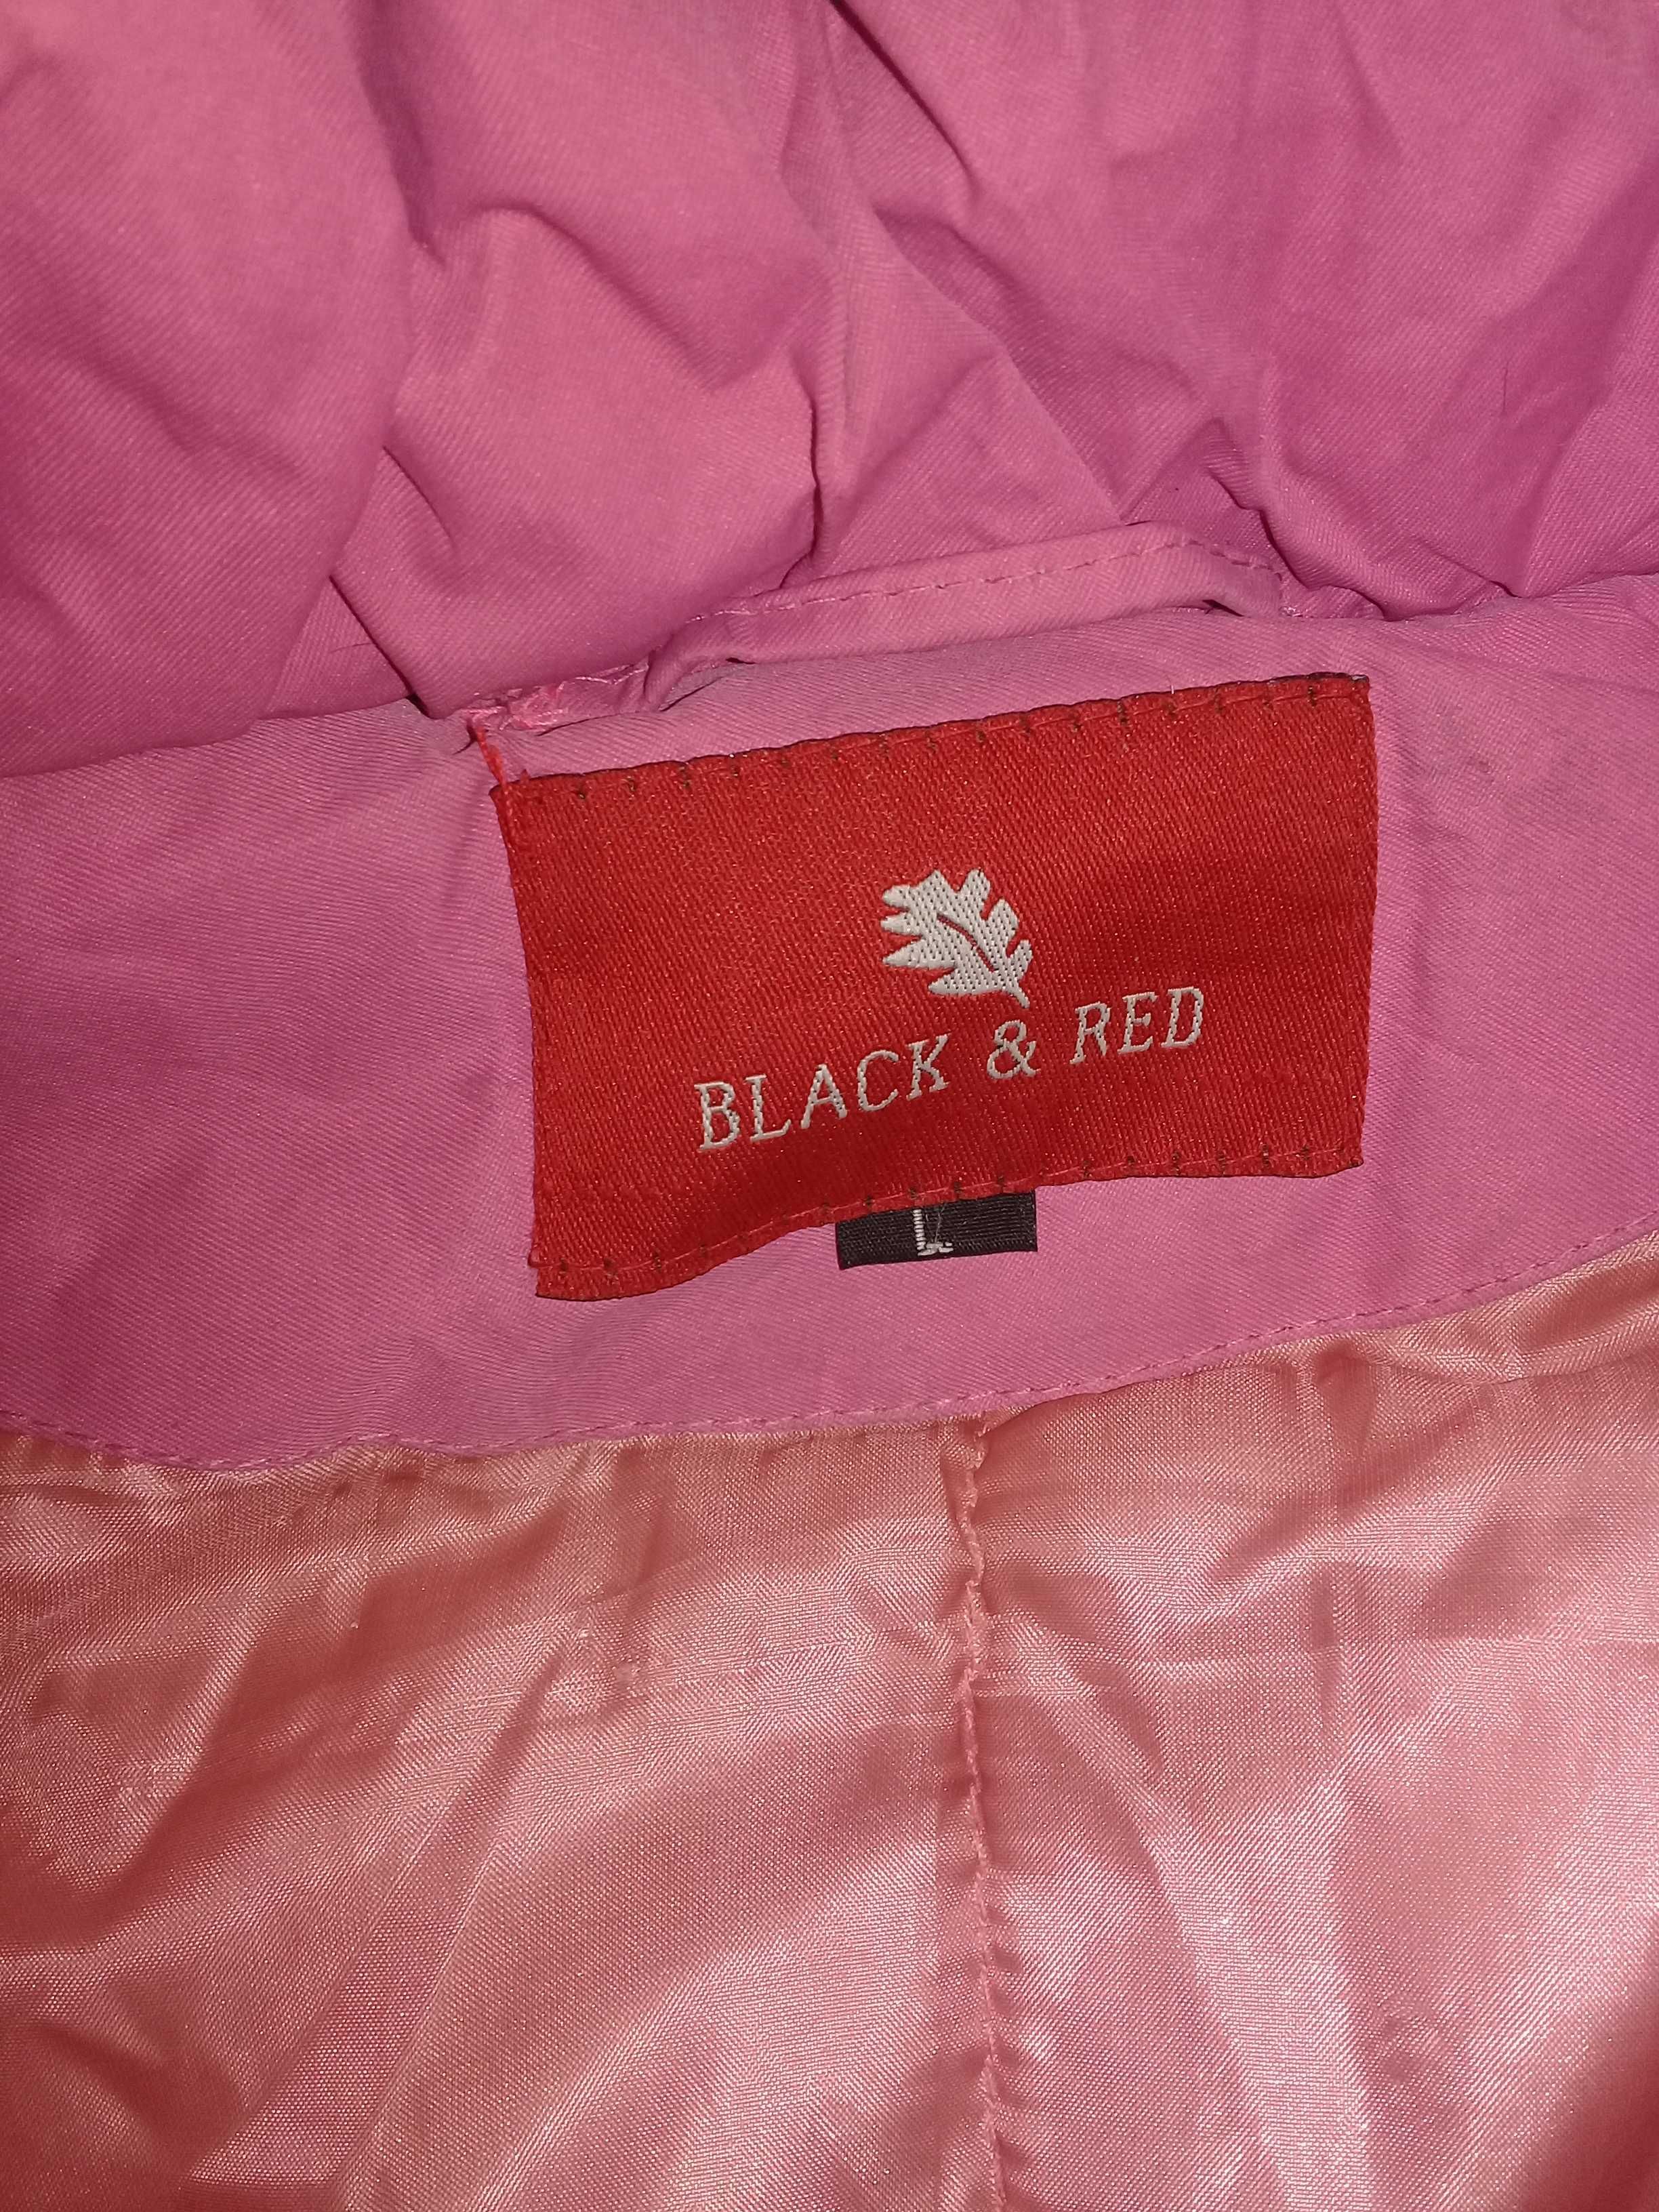 Пуховик женский, розовый, с капюшоном. "Red&Black". Для Крушавеля.